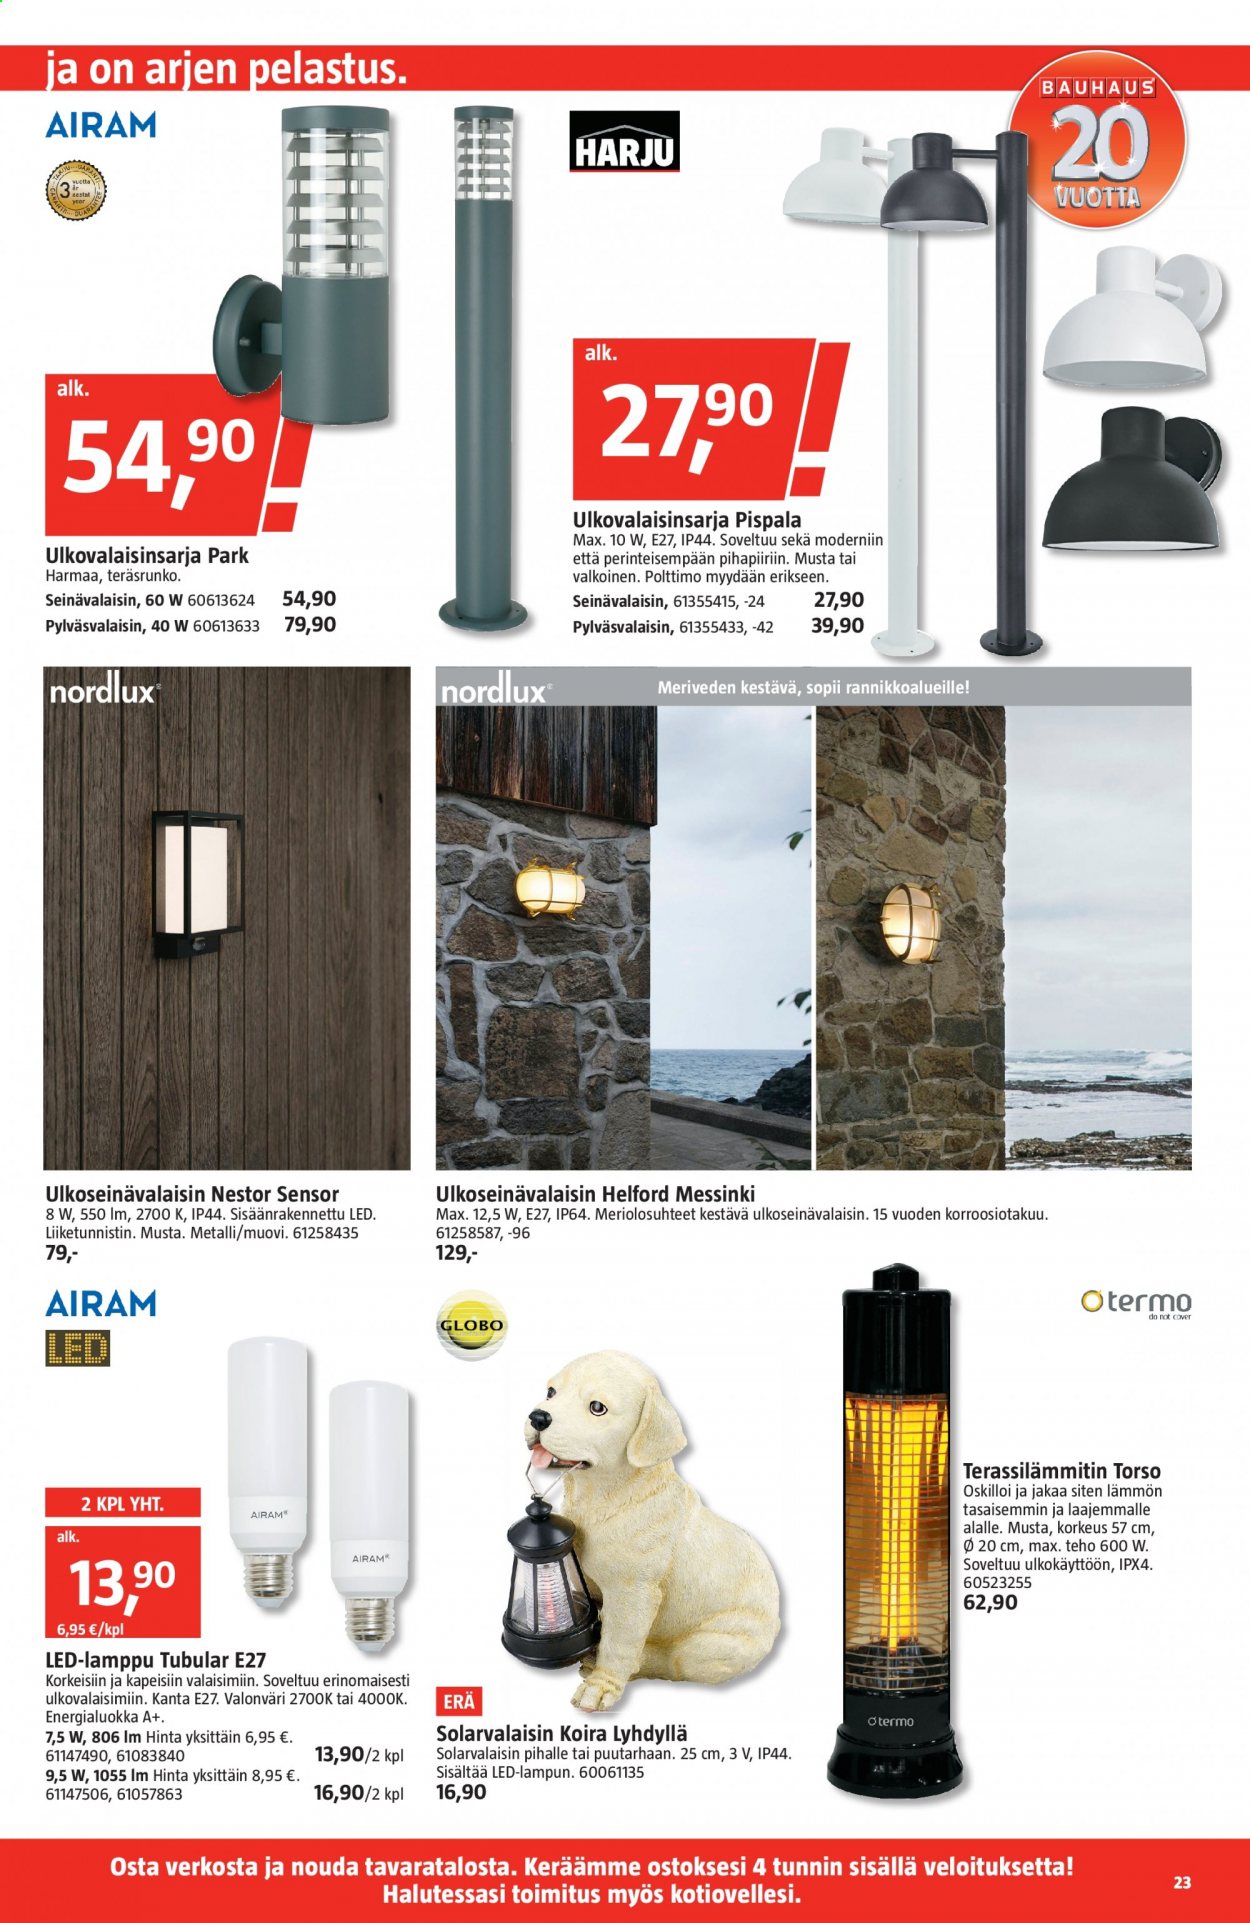 thumbnail - Bauhaus tarjoukset  - 07.04.2021 - 20.04.2021 - Tarjoustuotteet - lamppu, seinävalaisin, ulkoseinävalaisin. Sivu 23.